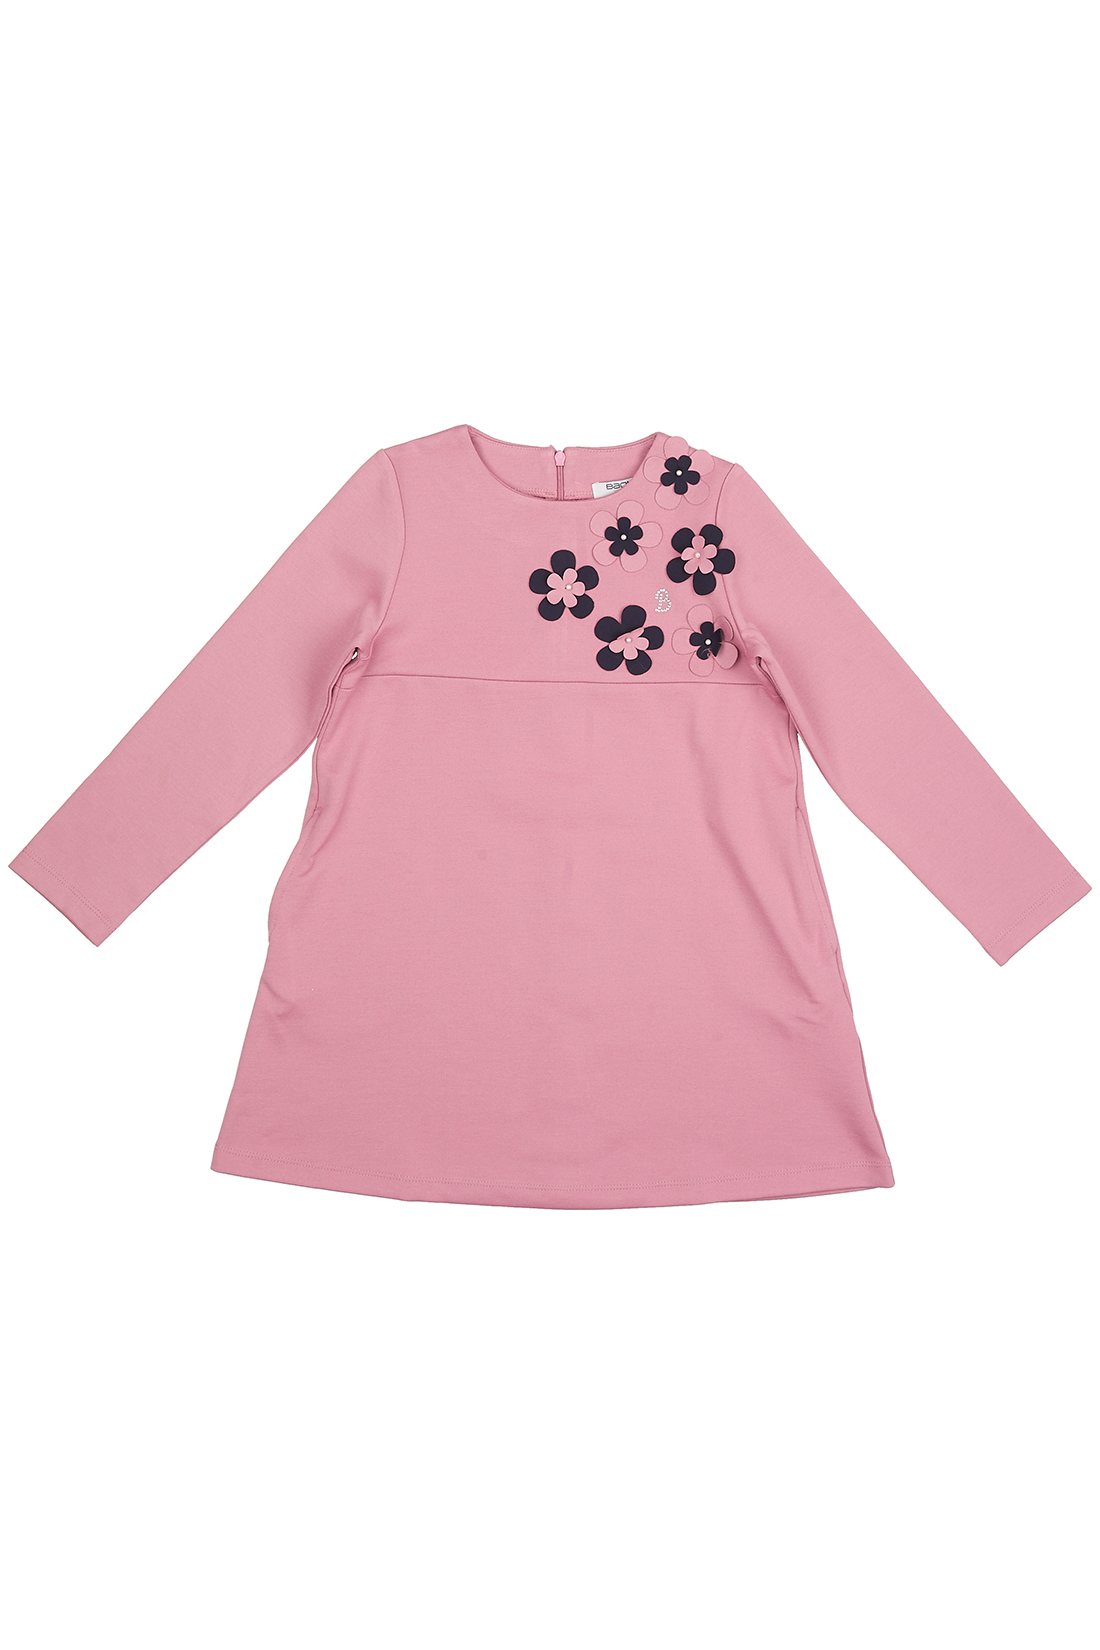 Платье для девочки (арт. baon BK458504), размер 98-104, цвет розовый